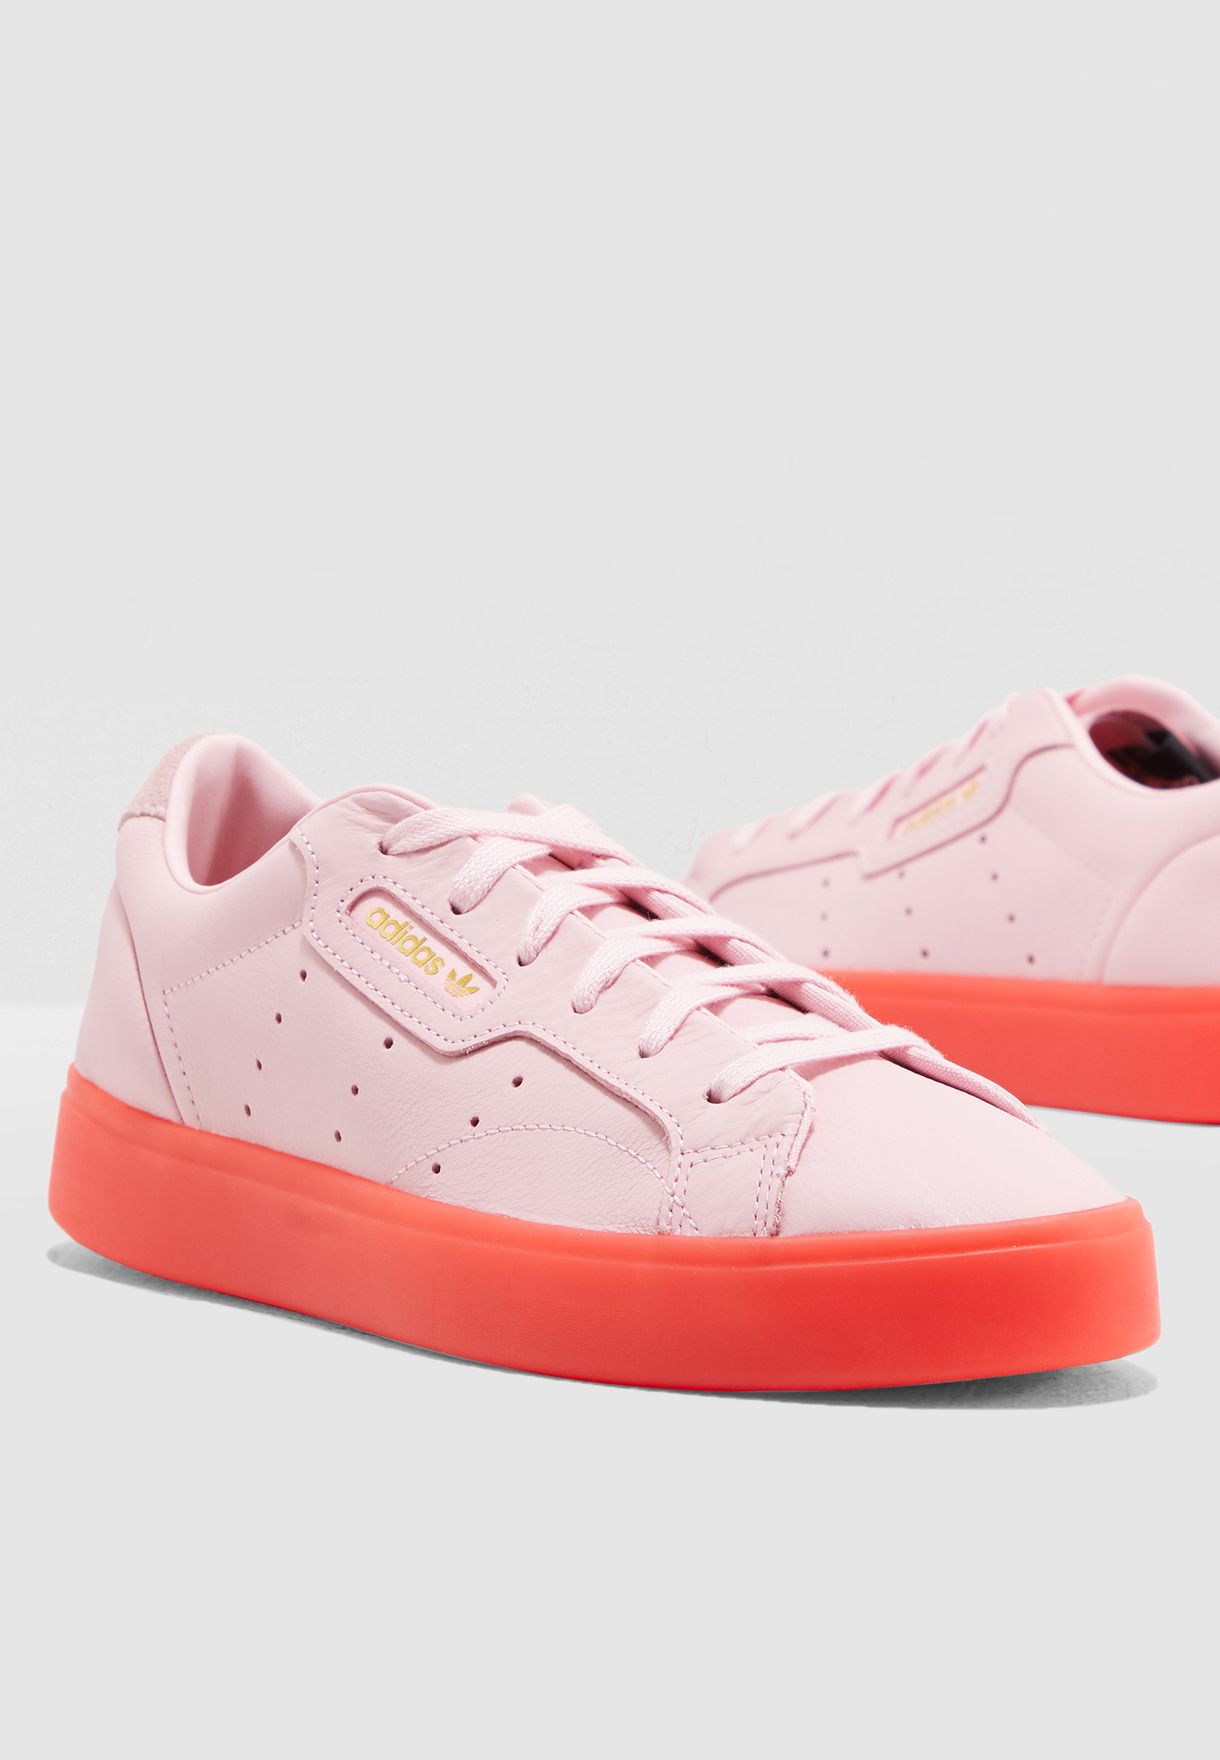 adidas sleek white and pink